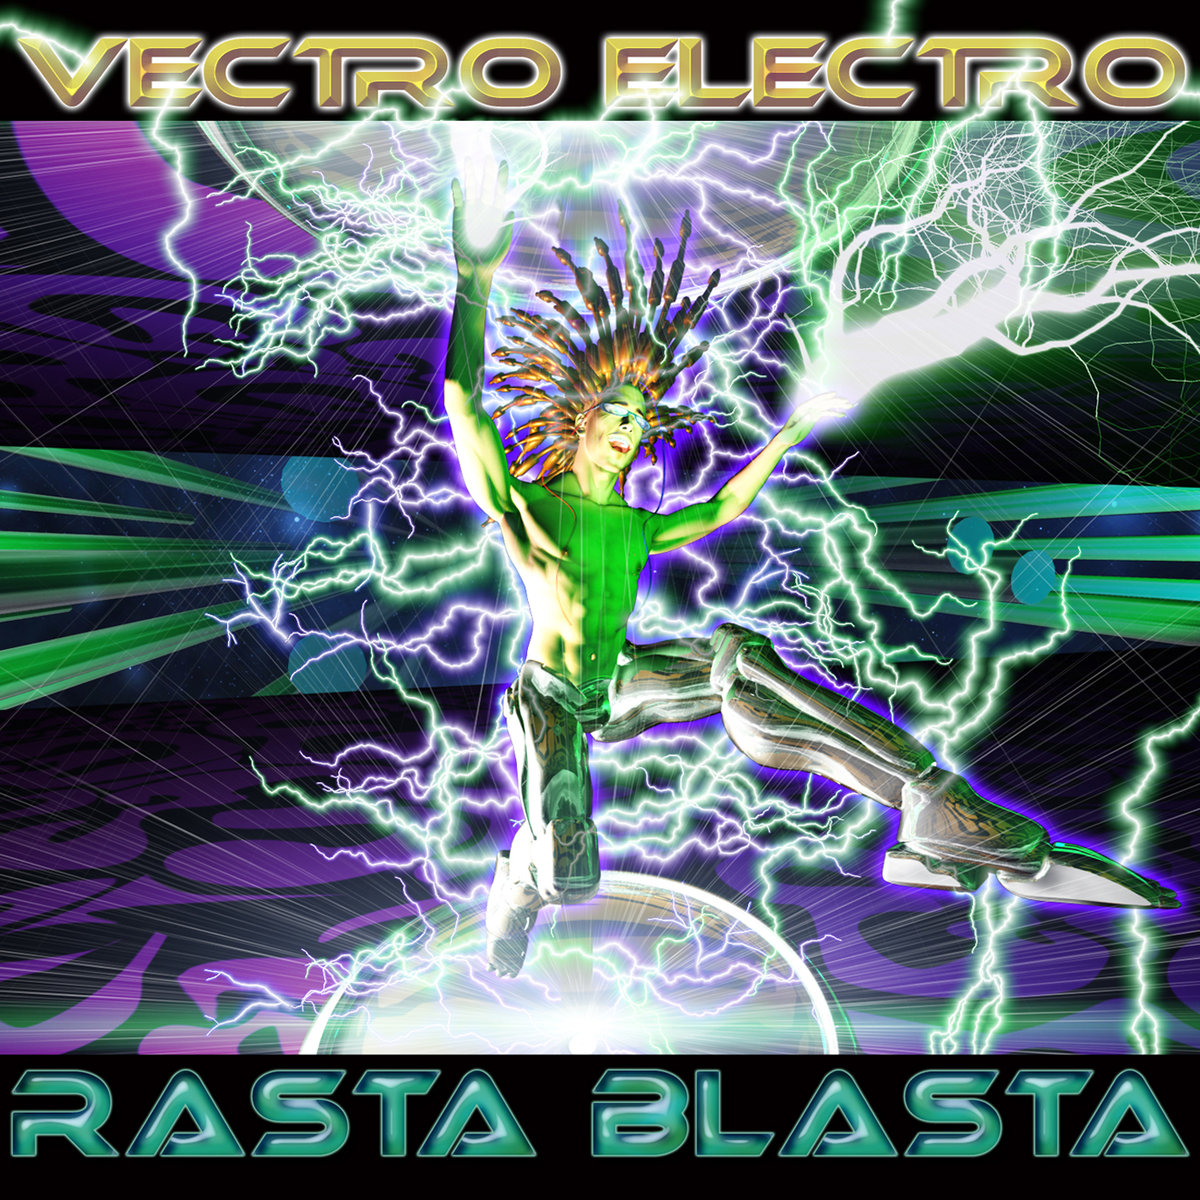 Vectro Electro - Abvgdeika @ 'Rasta Blasta' album (electronic, goa)